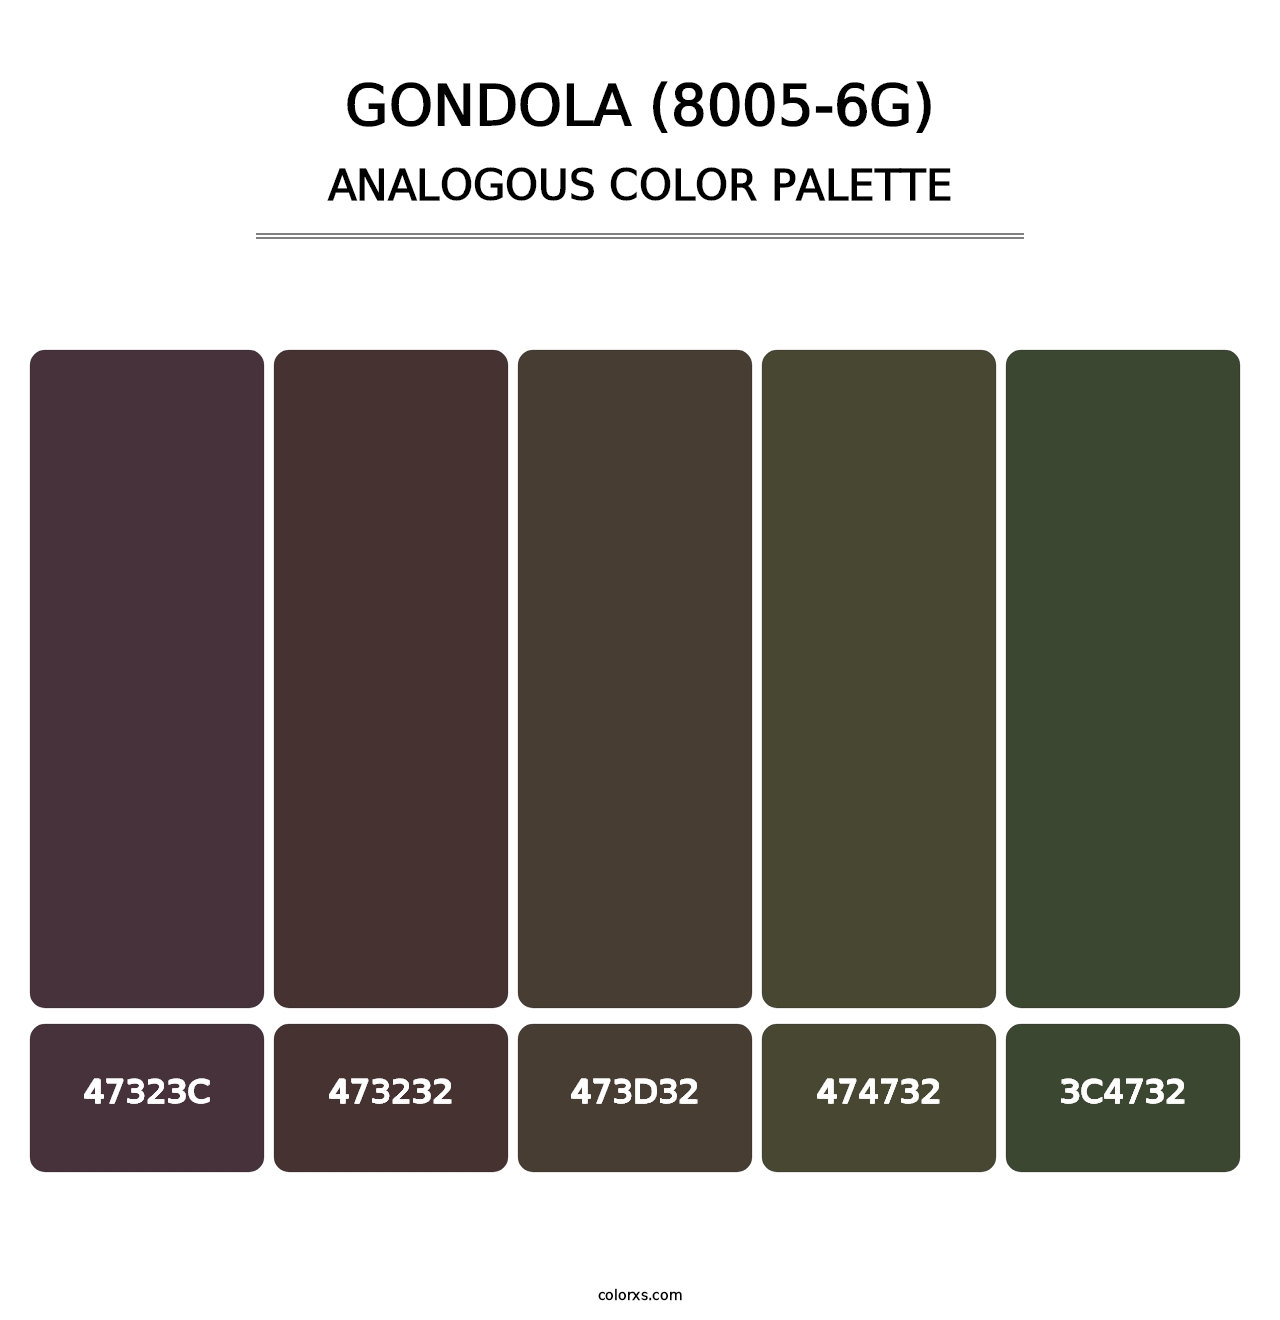 Gondola (8005-6G) - Analogous Color Palette